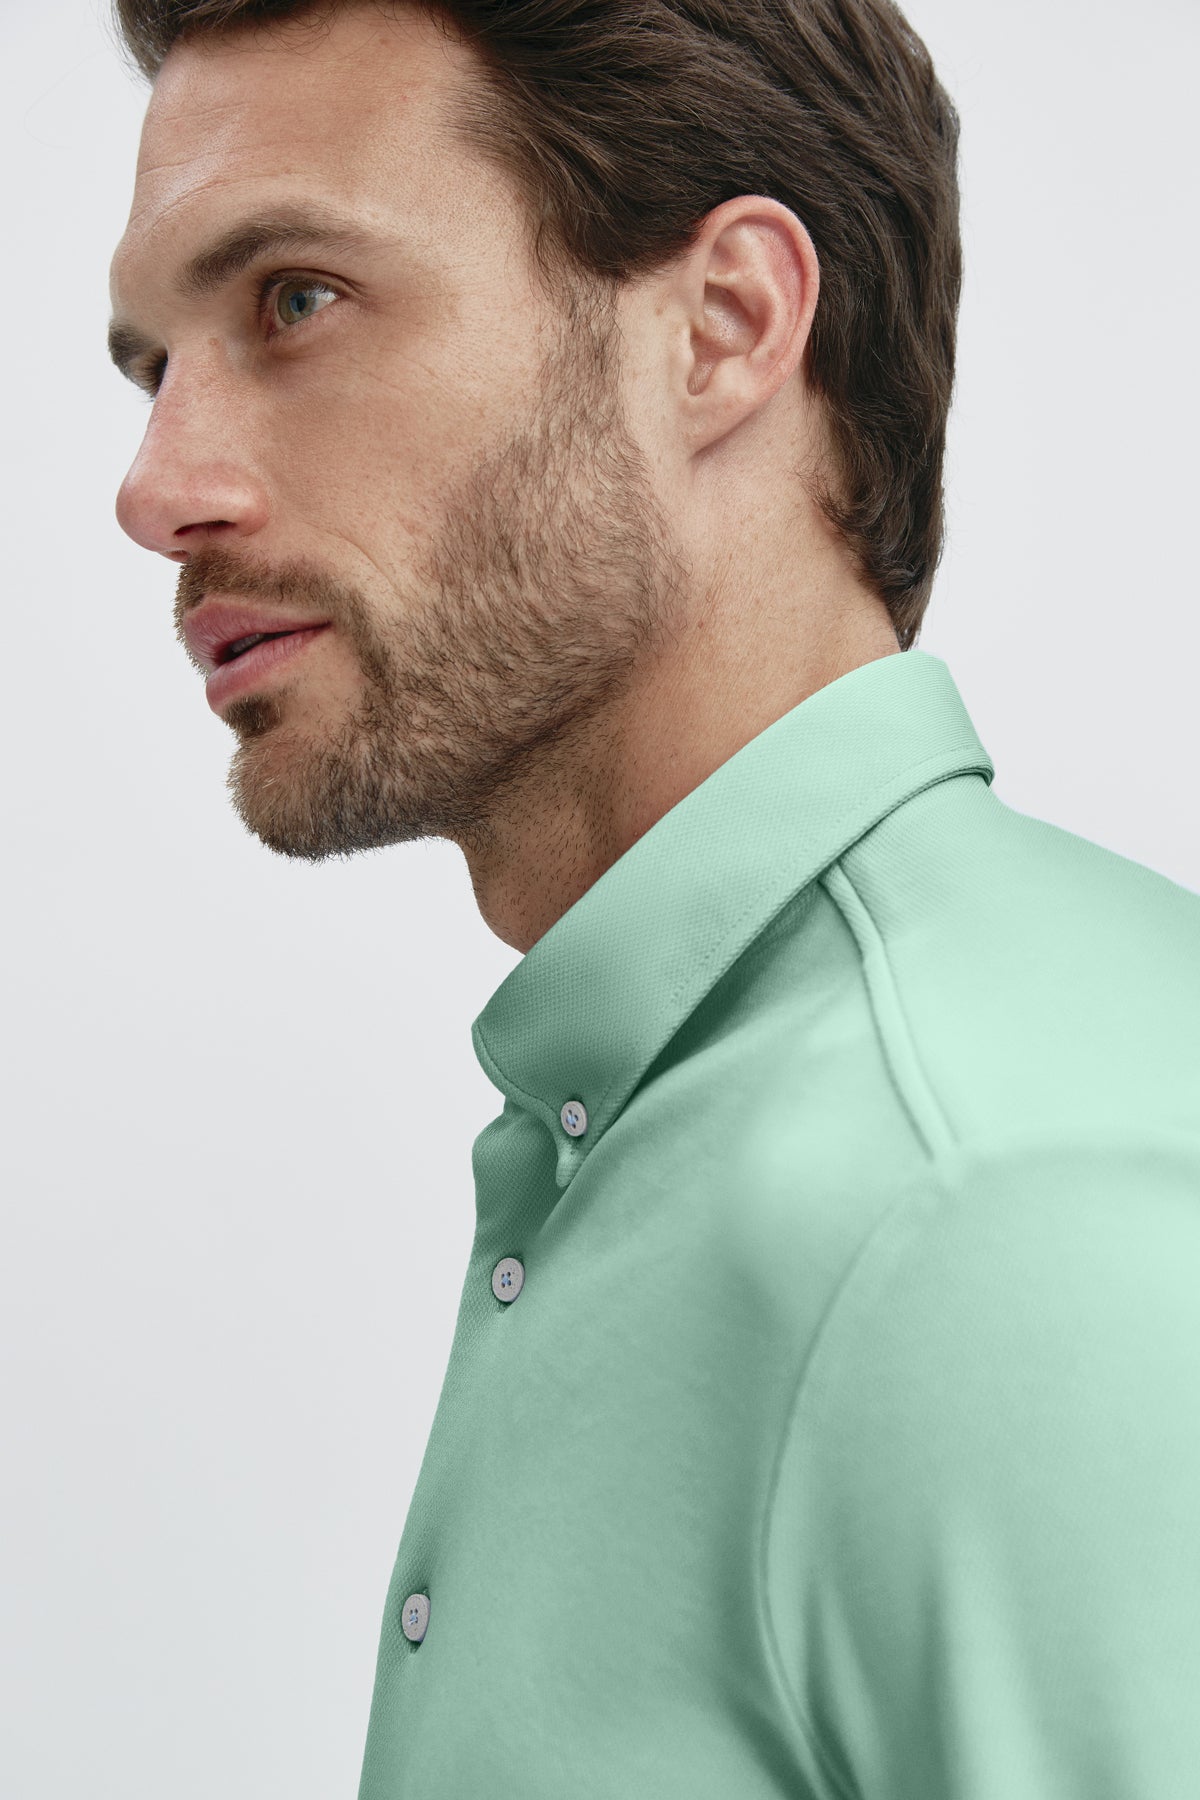 Camisa casual verde jade para hombre sin arrugas ni manchas. Manga larga, antiarrugas y antimanchas. Foto retrato